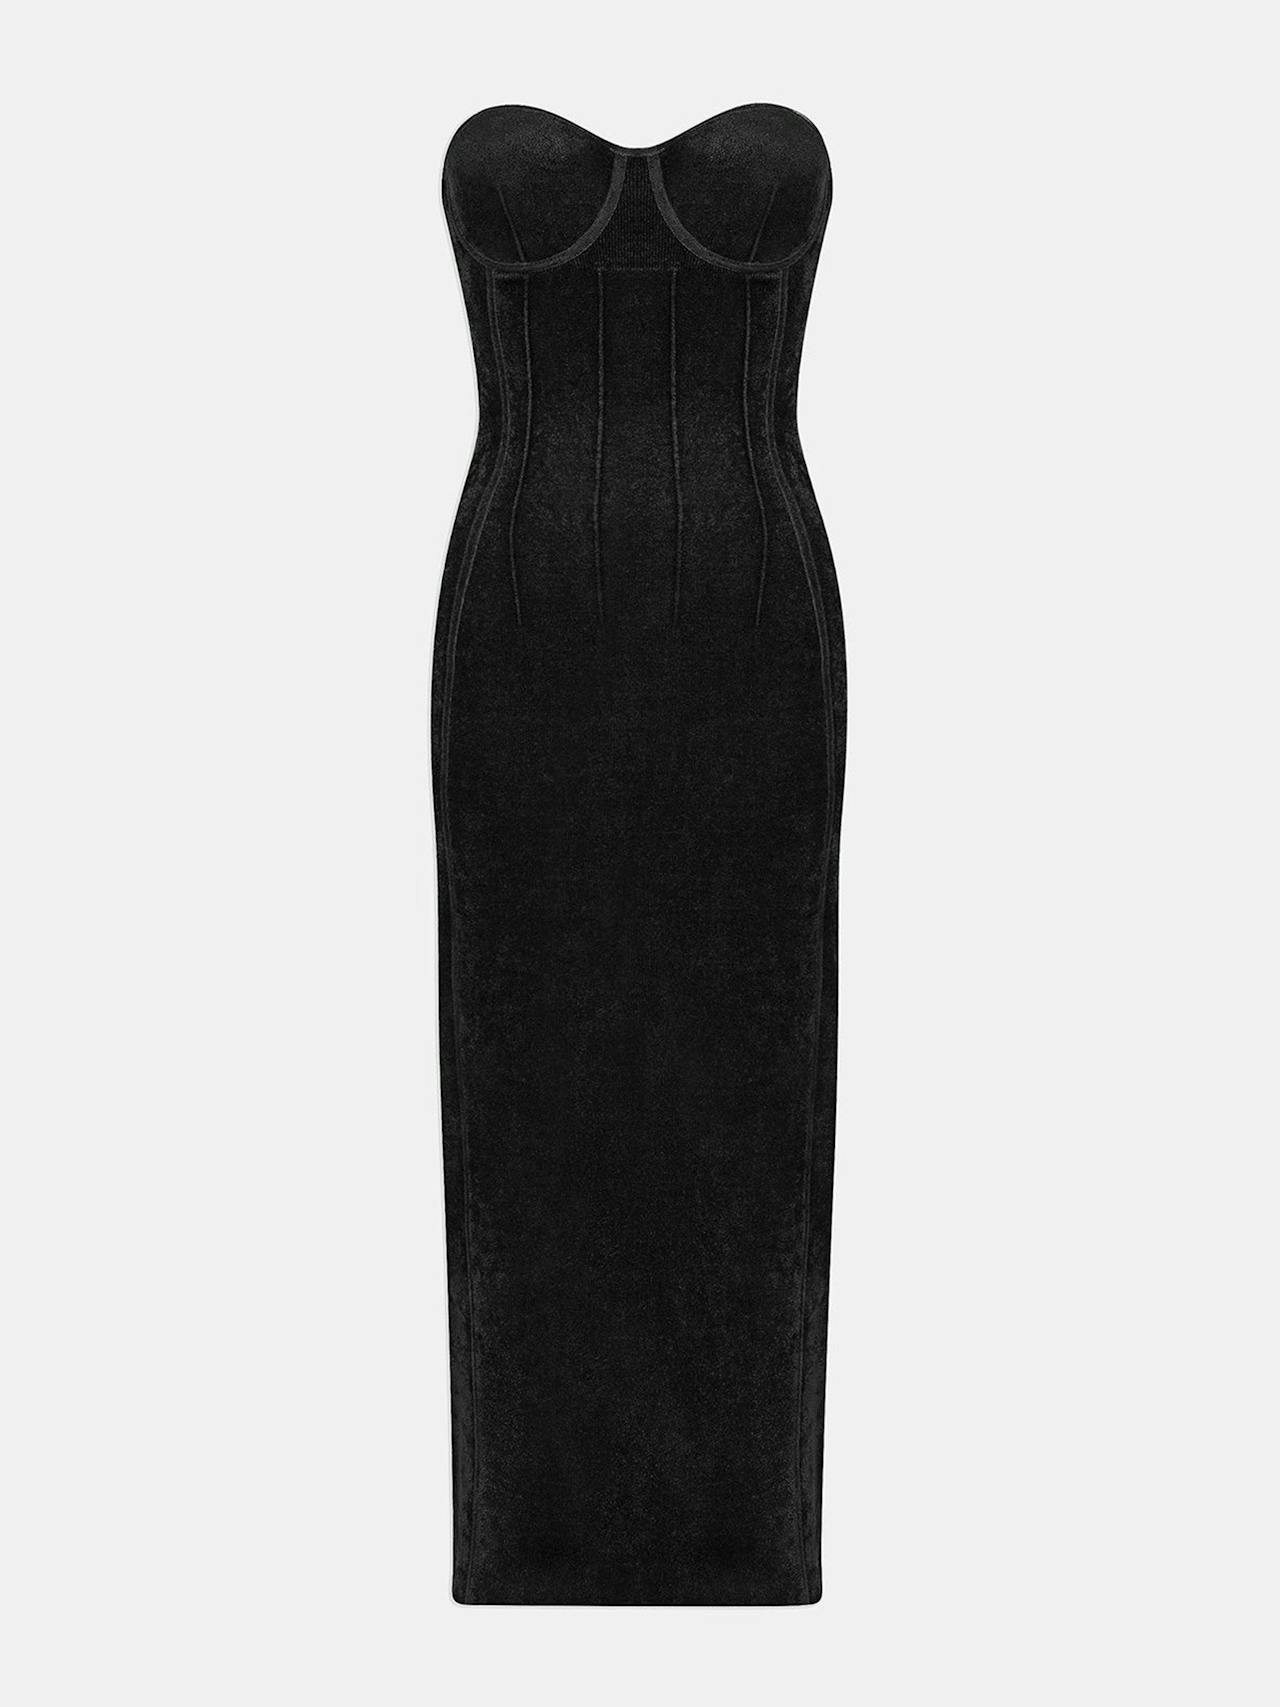 Black velvet Titania bustier dress